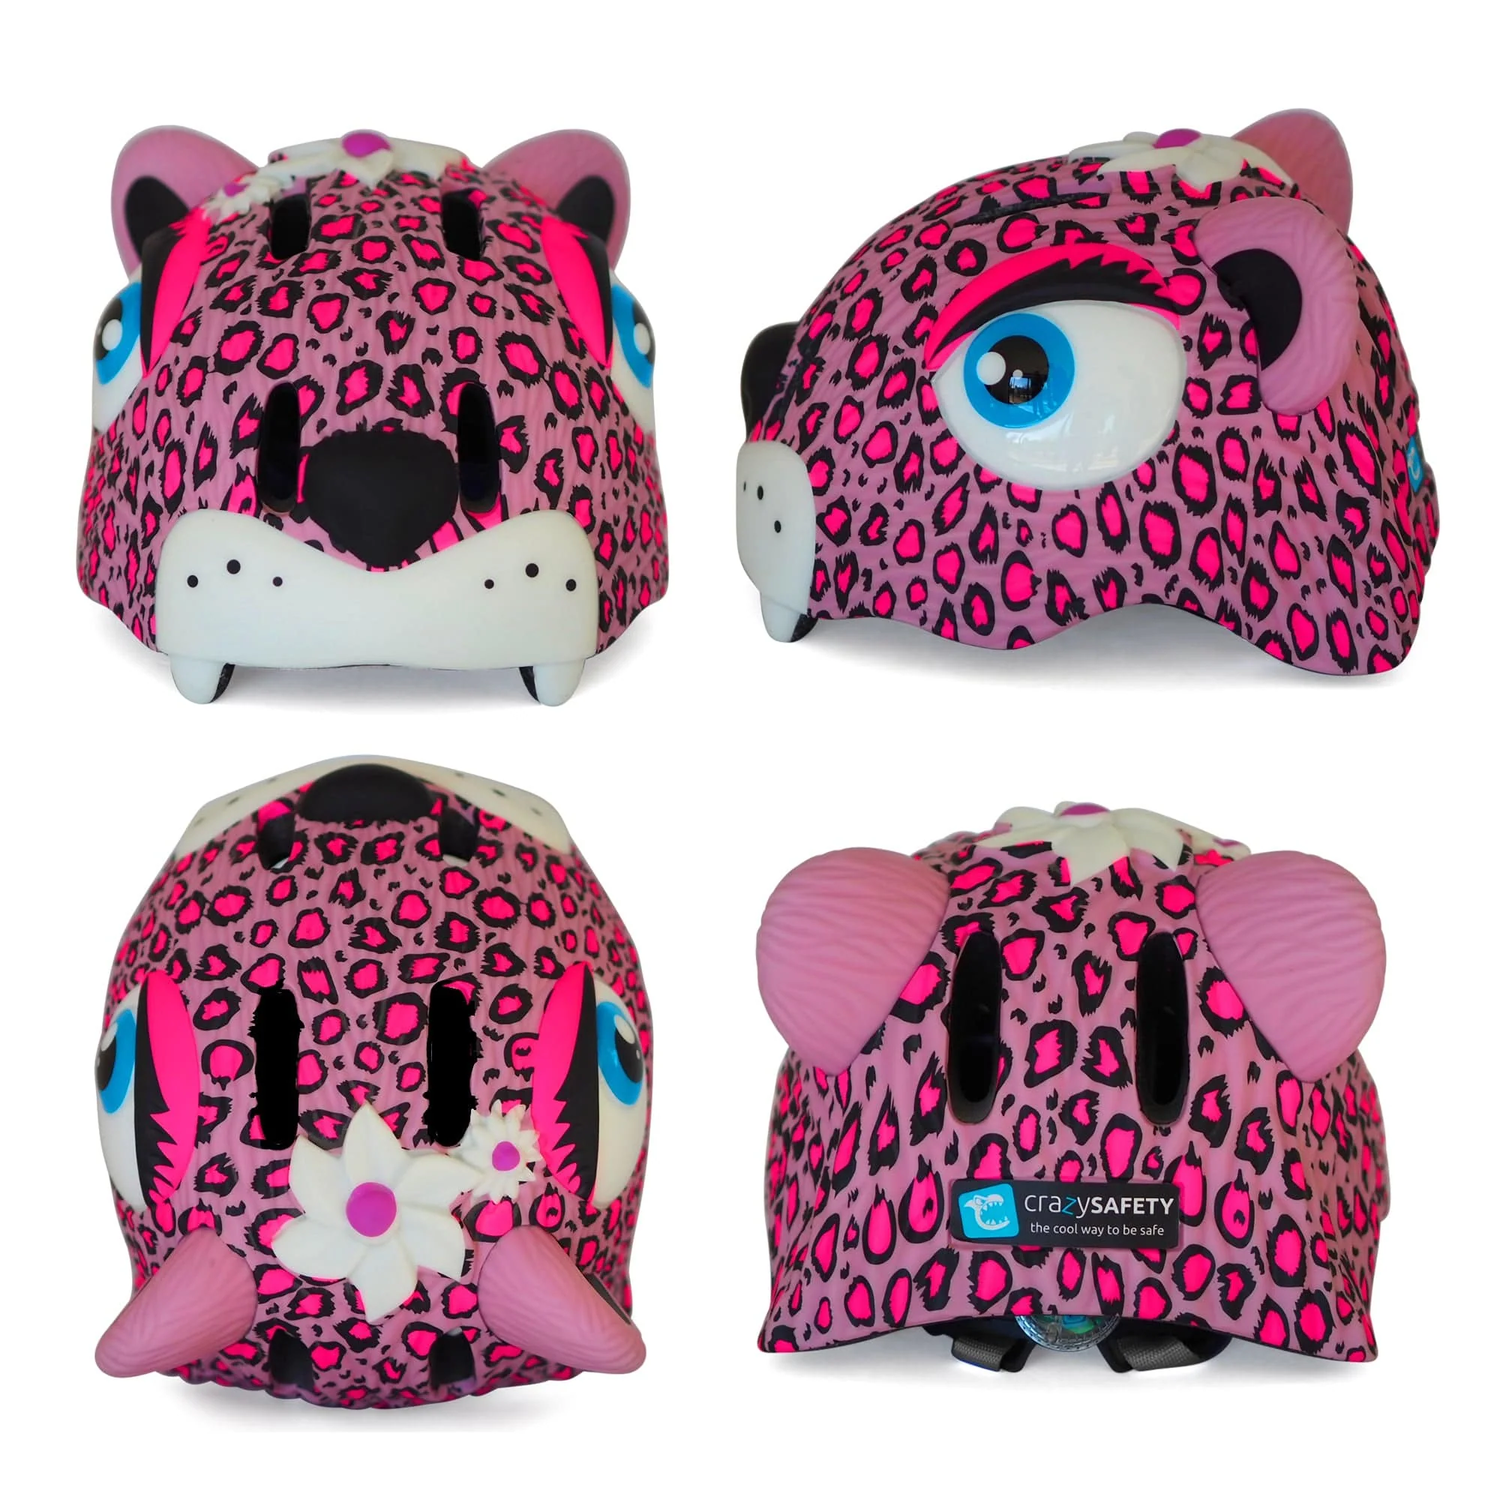 Шлем защитный Crazy Safety Pink Leopard с механизмом регулировки размера 49-55 см - фото 2